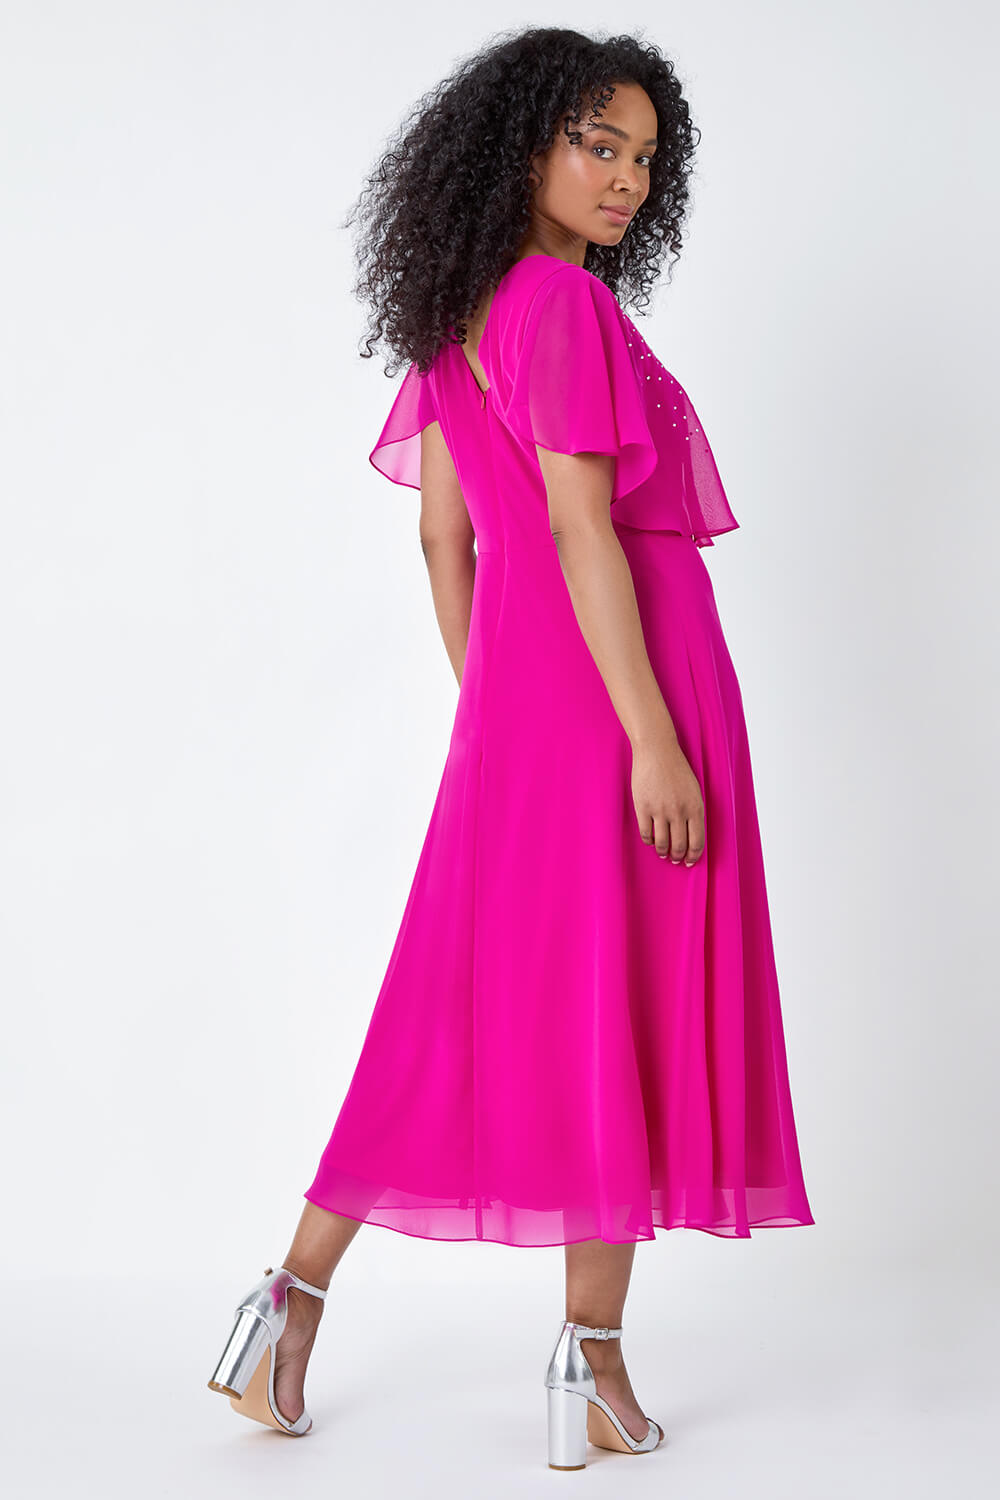 PINK Petite Embellished Chiffon Midi Cape Dress, Image 3 of 5